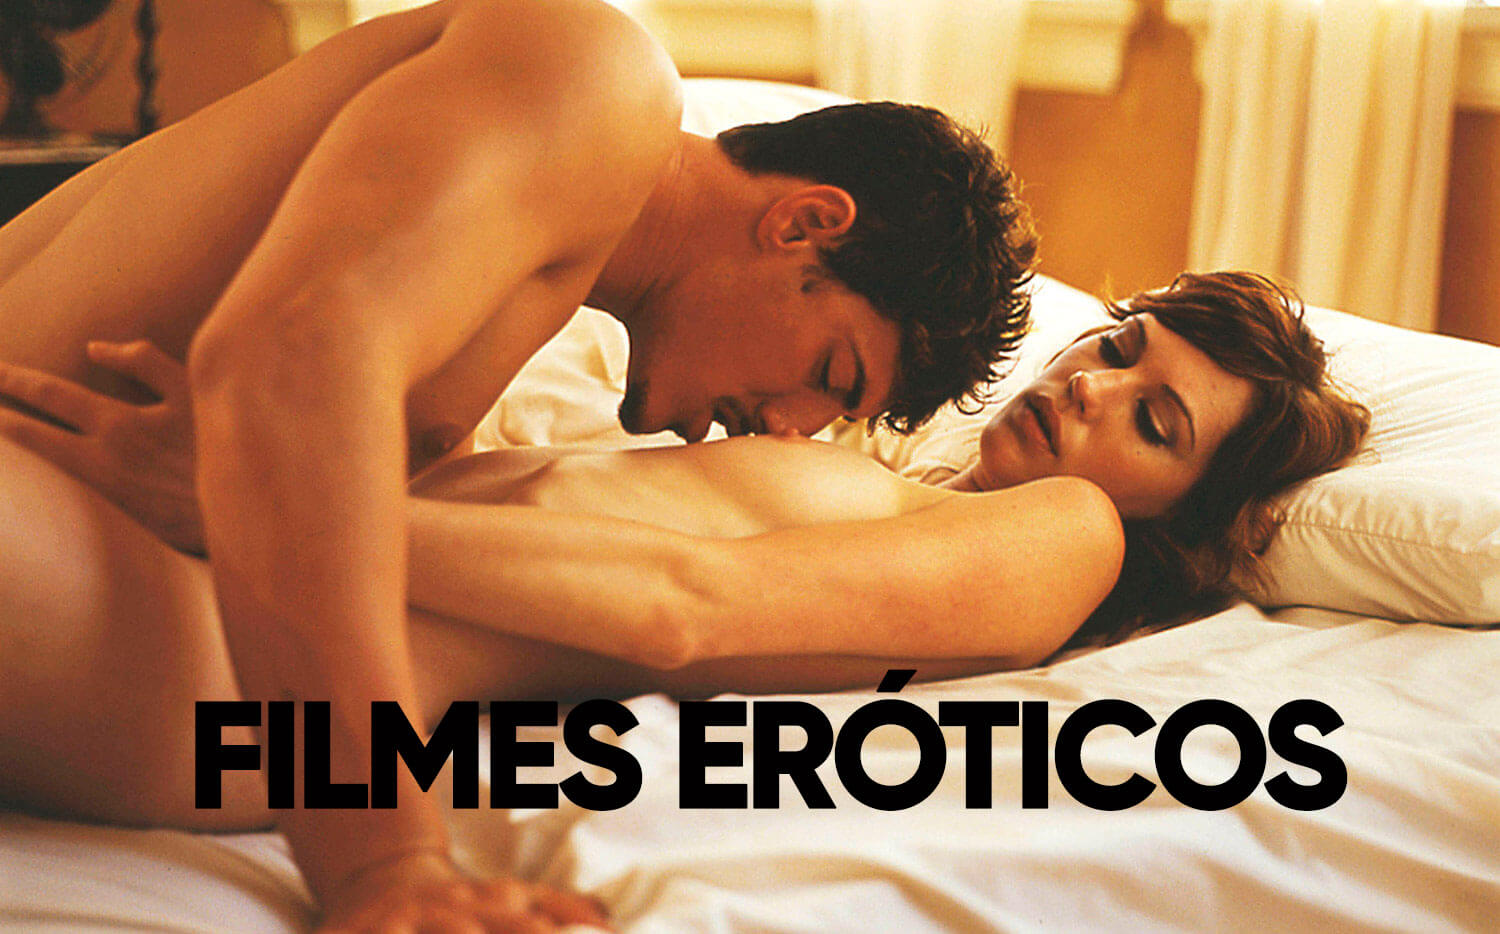 Filmes eróticos de sexo